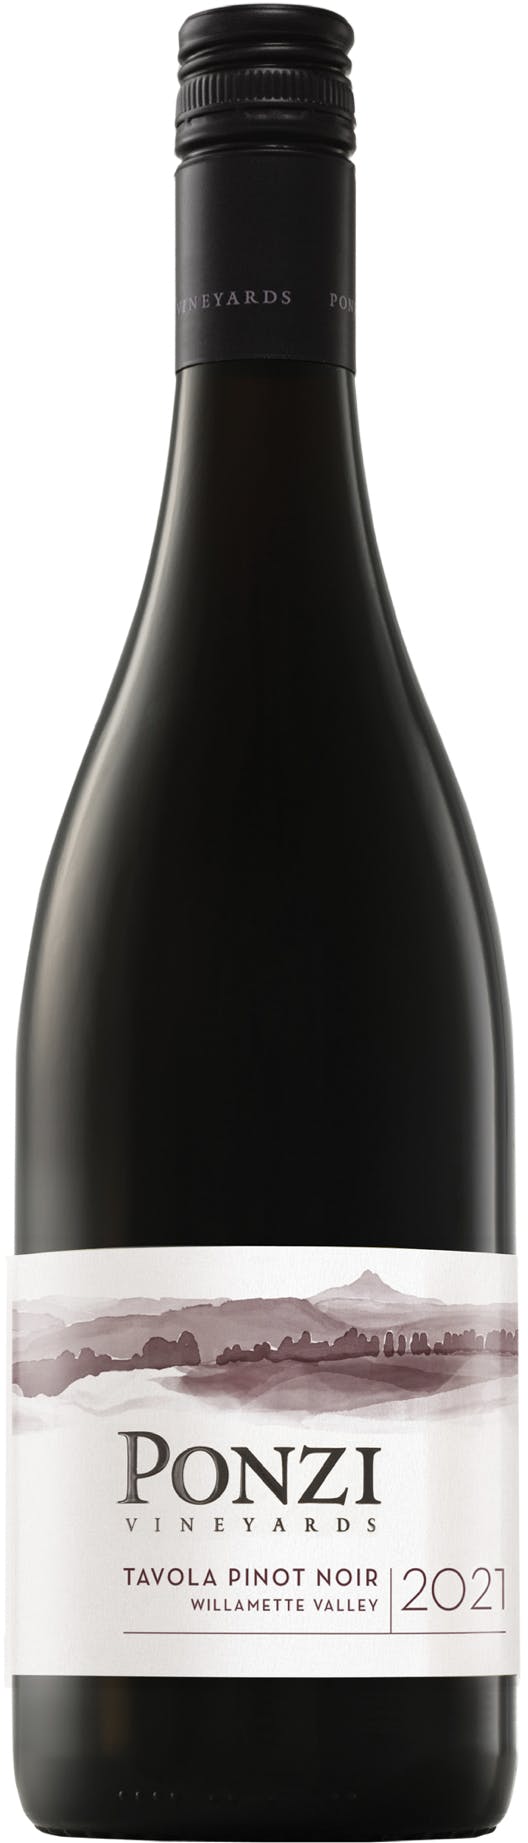 2021 Ponzi Pinot Noir Tavola